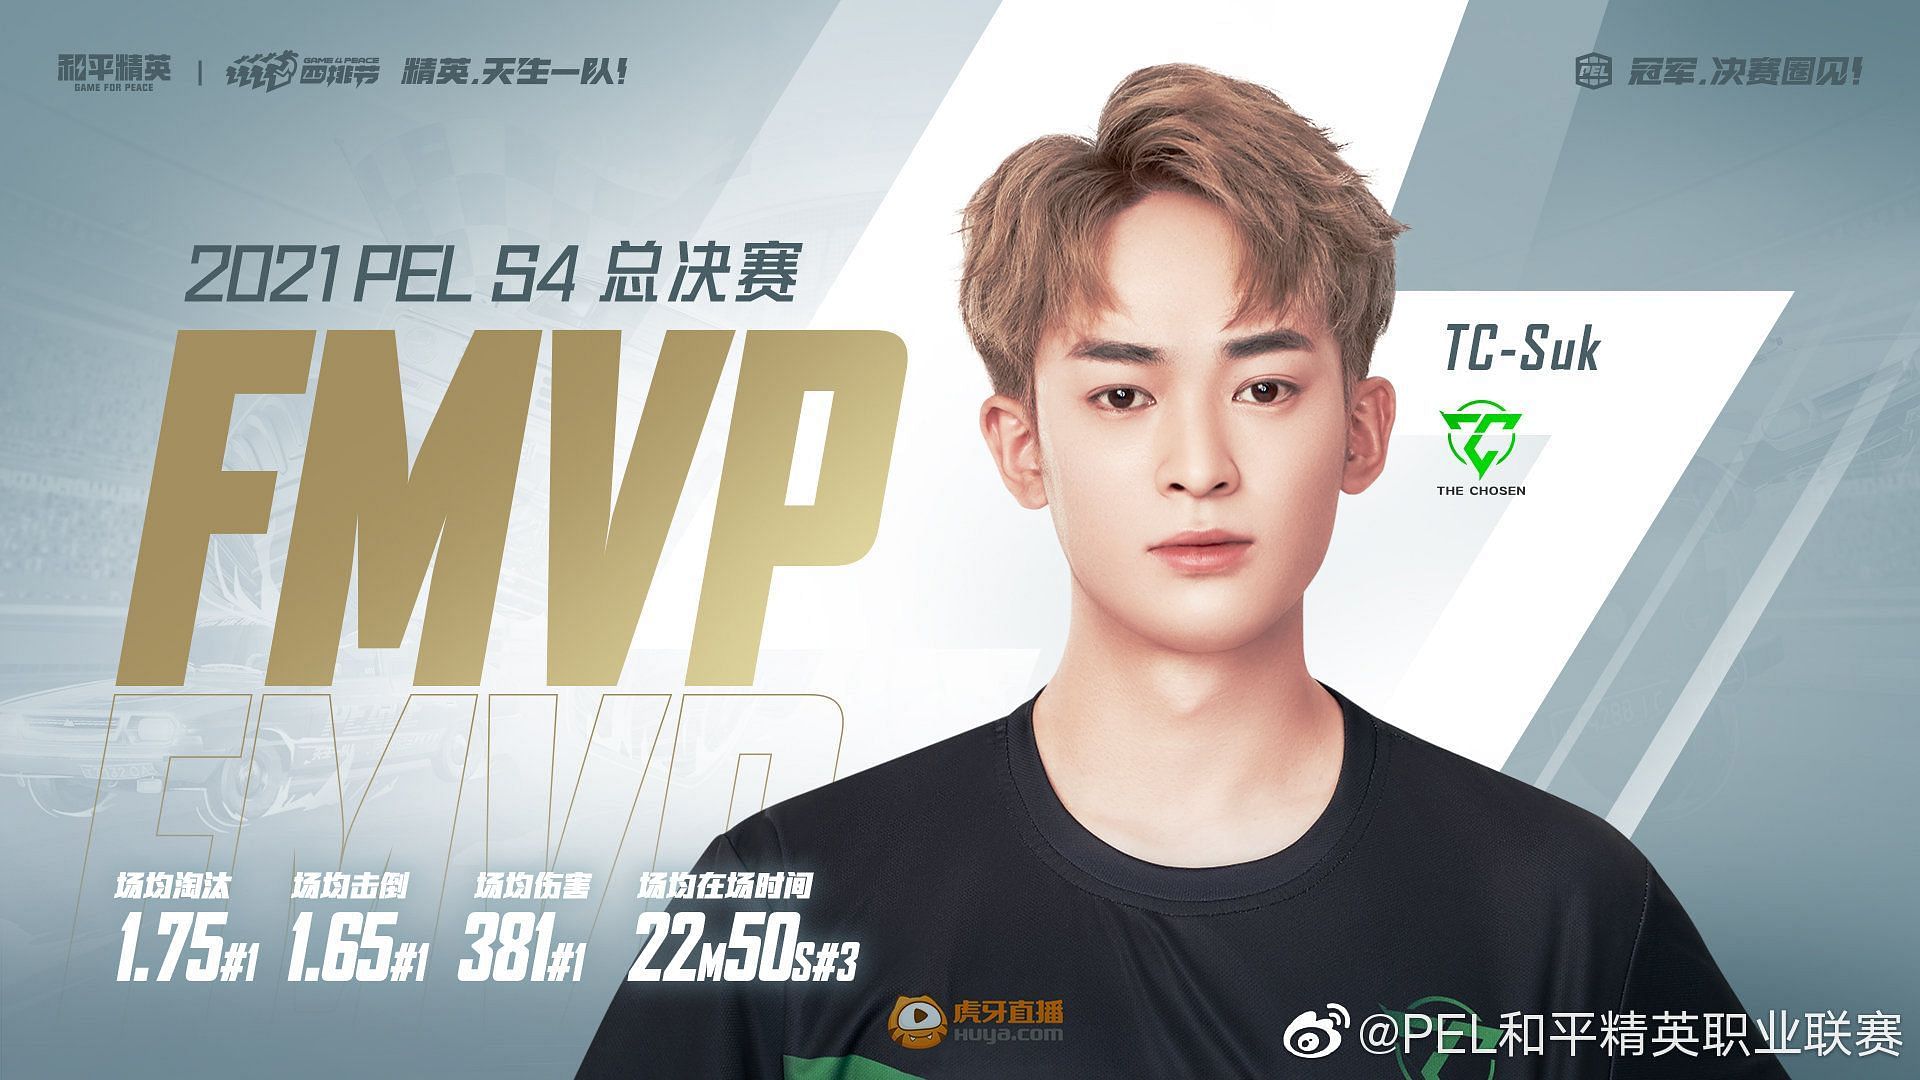 TC Suk was the MVP of PEL 2021 Season 4 Finals (Image via PEL official)